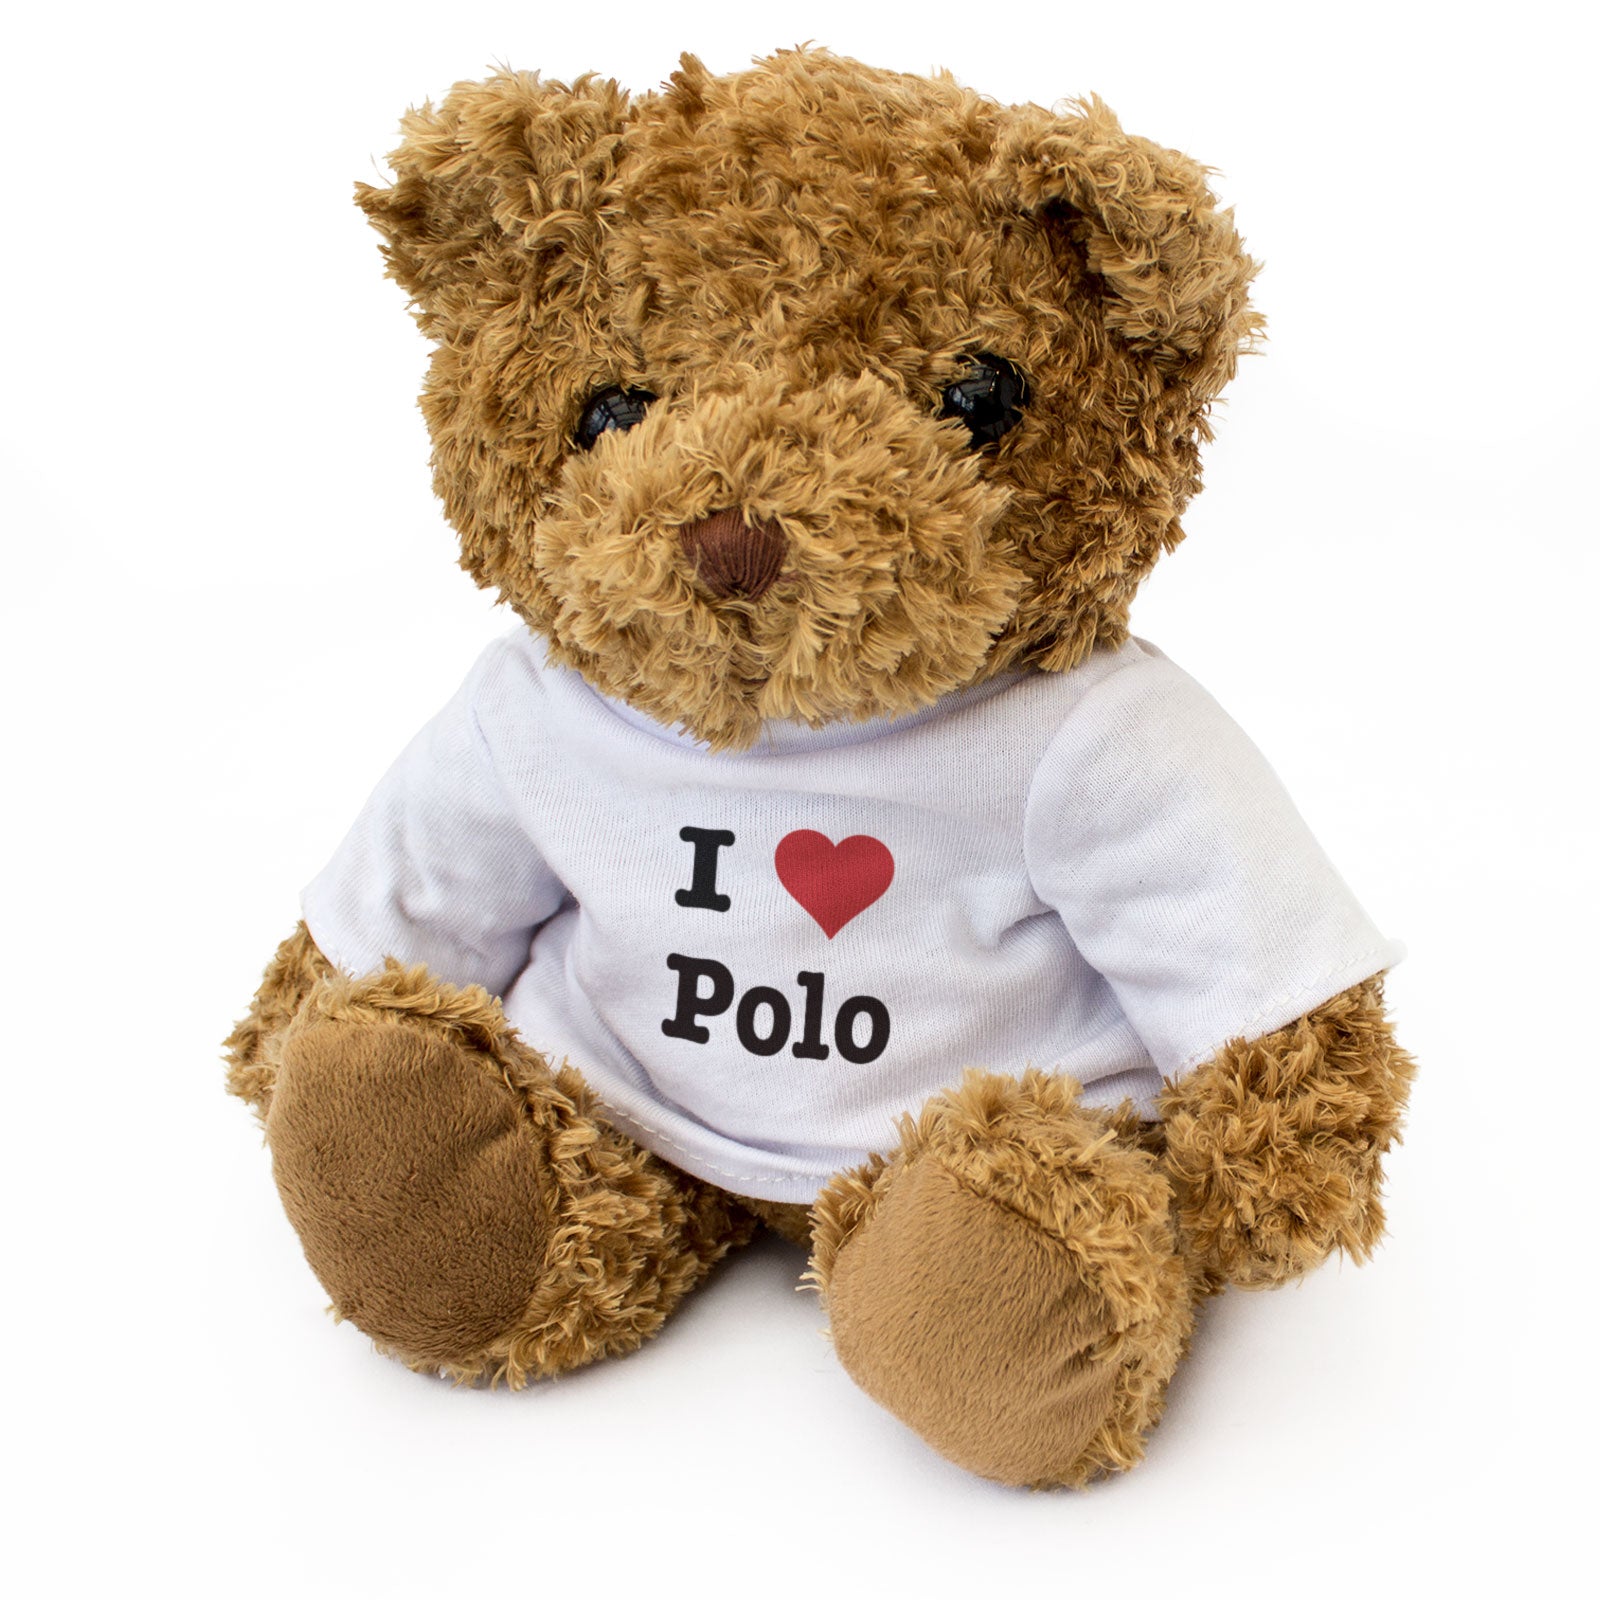 I Love Polo - Teddy Bear